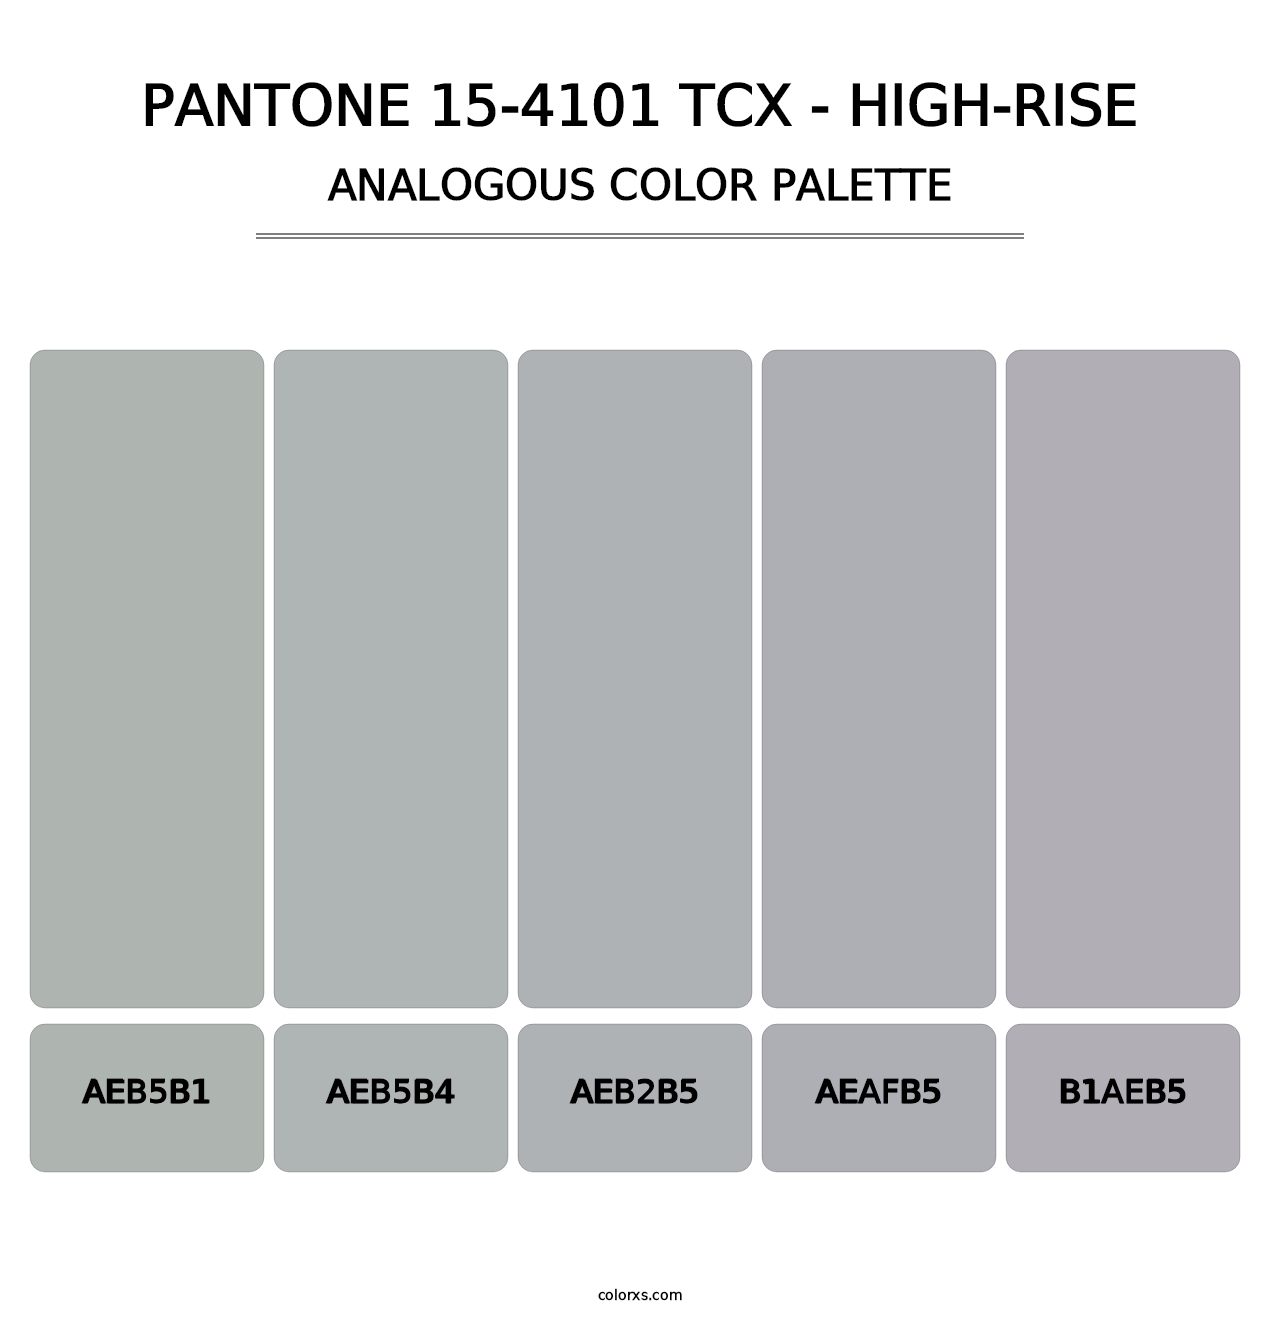 PANTONE 15-4101 TCX - High-rise - Analogous Color Palette